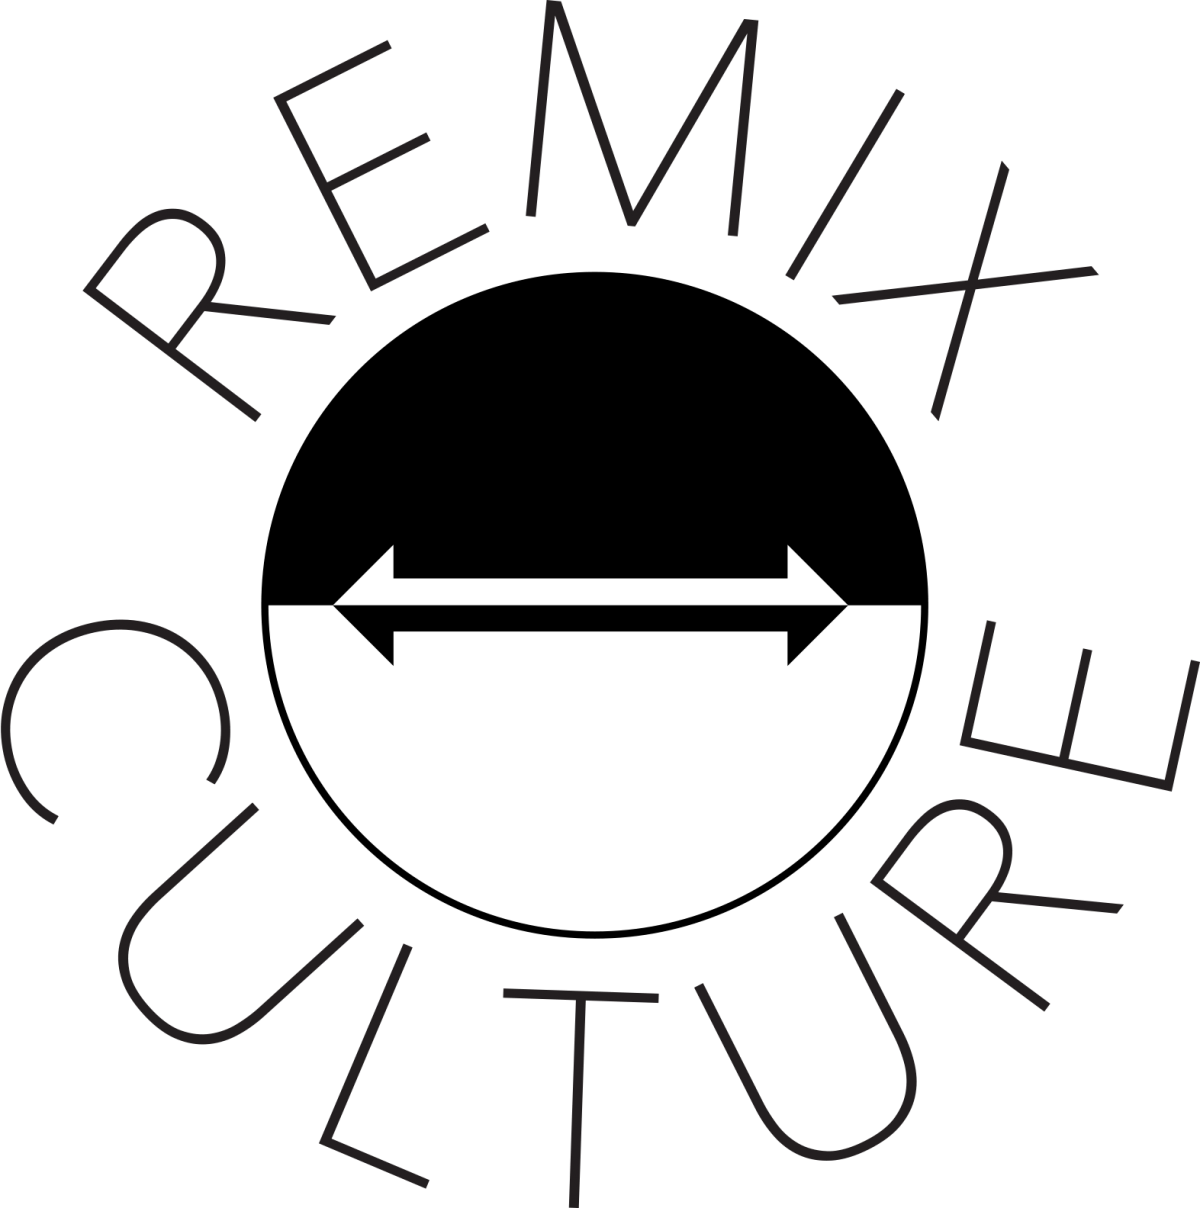 remix-culture.png